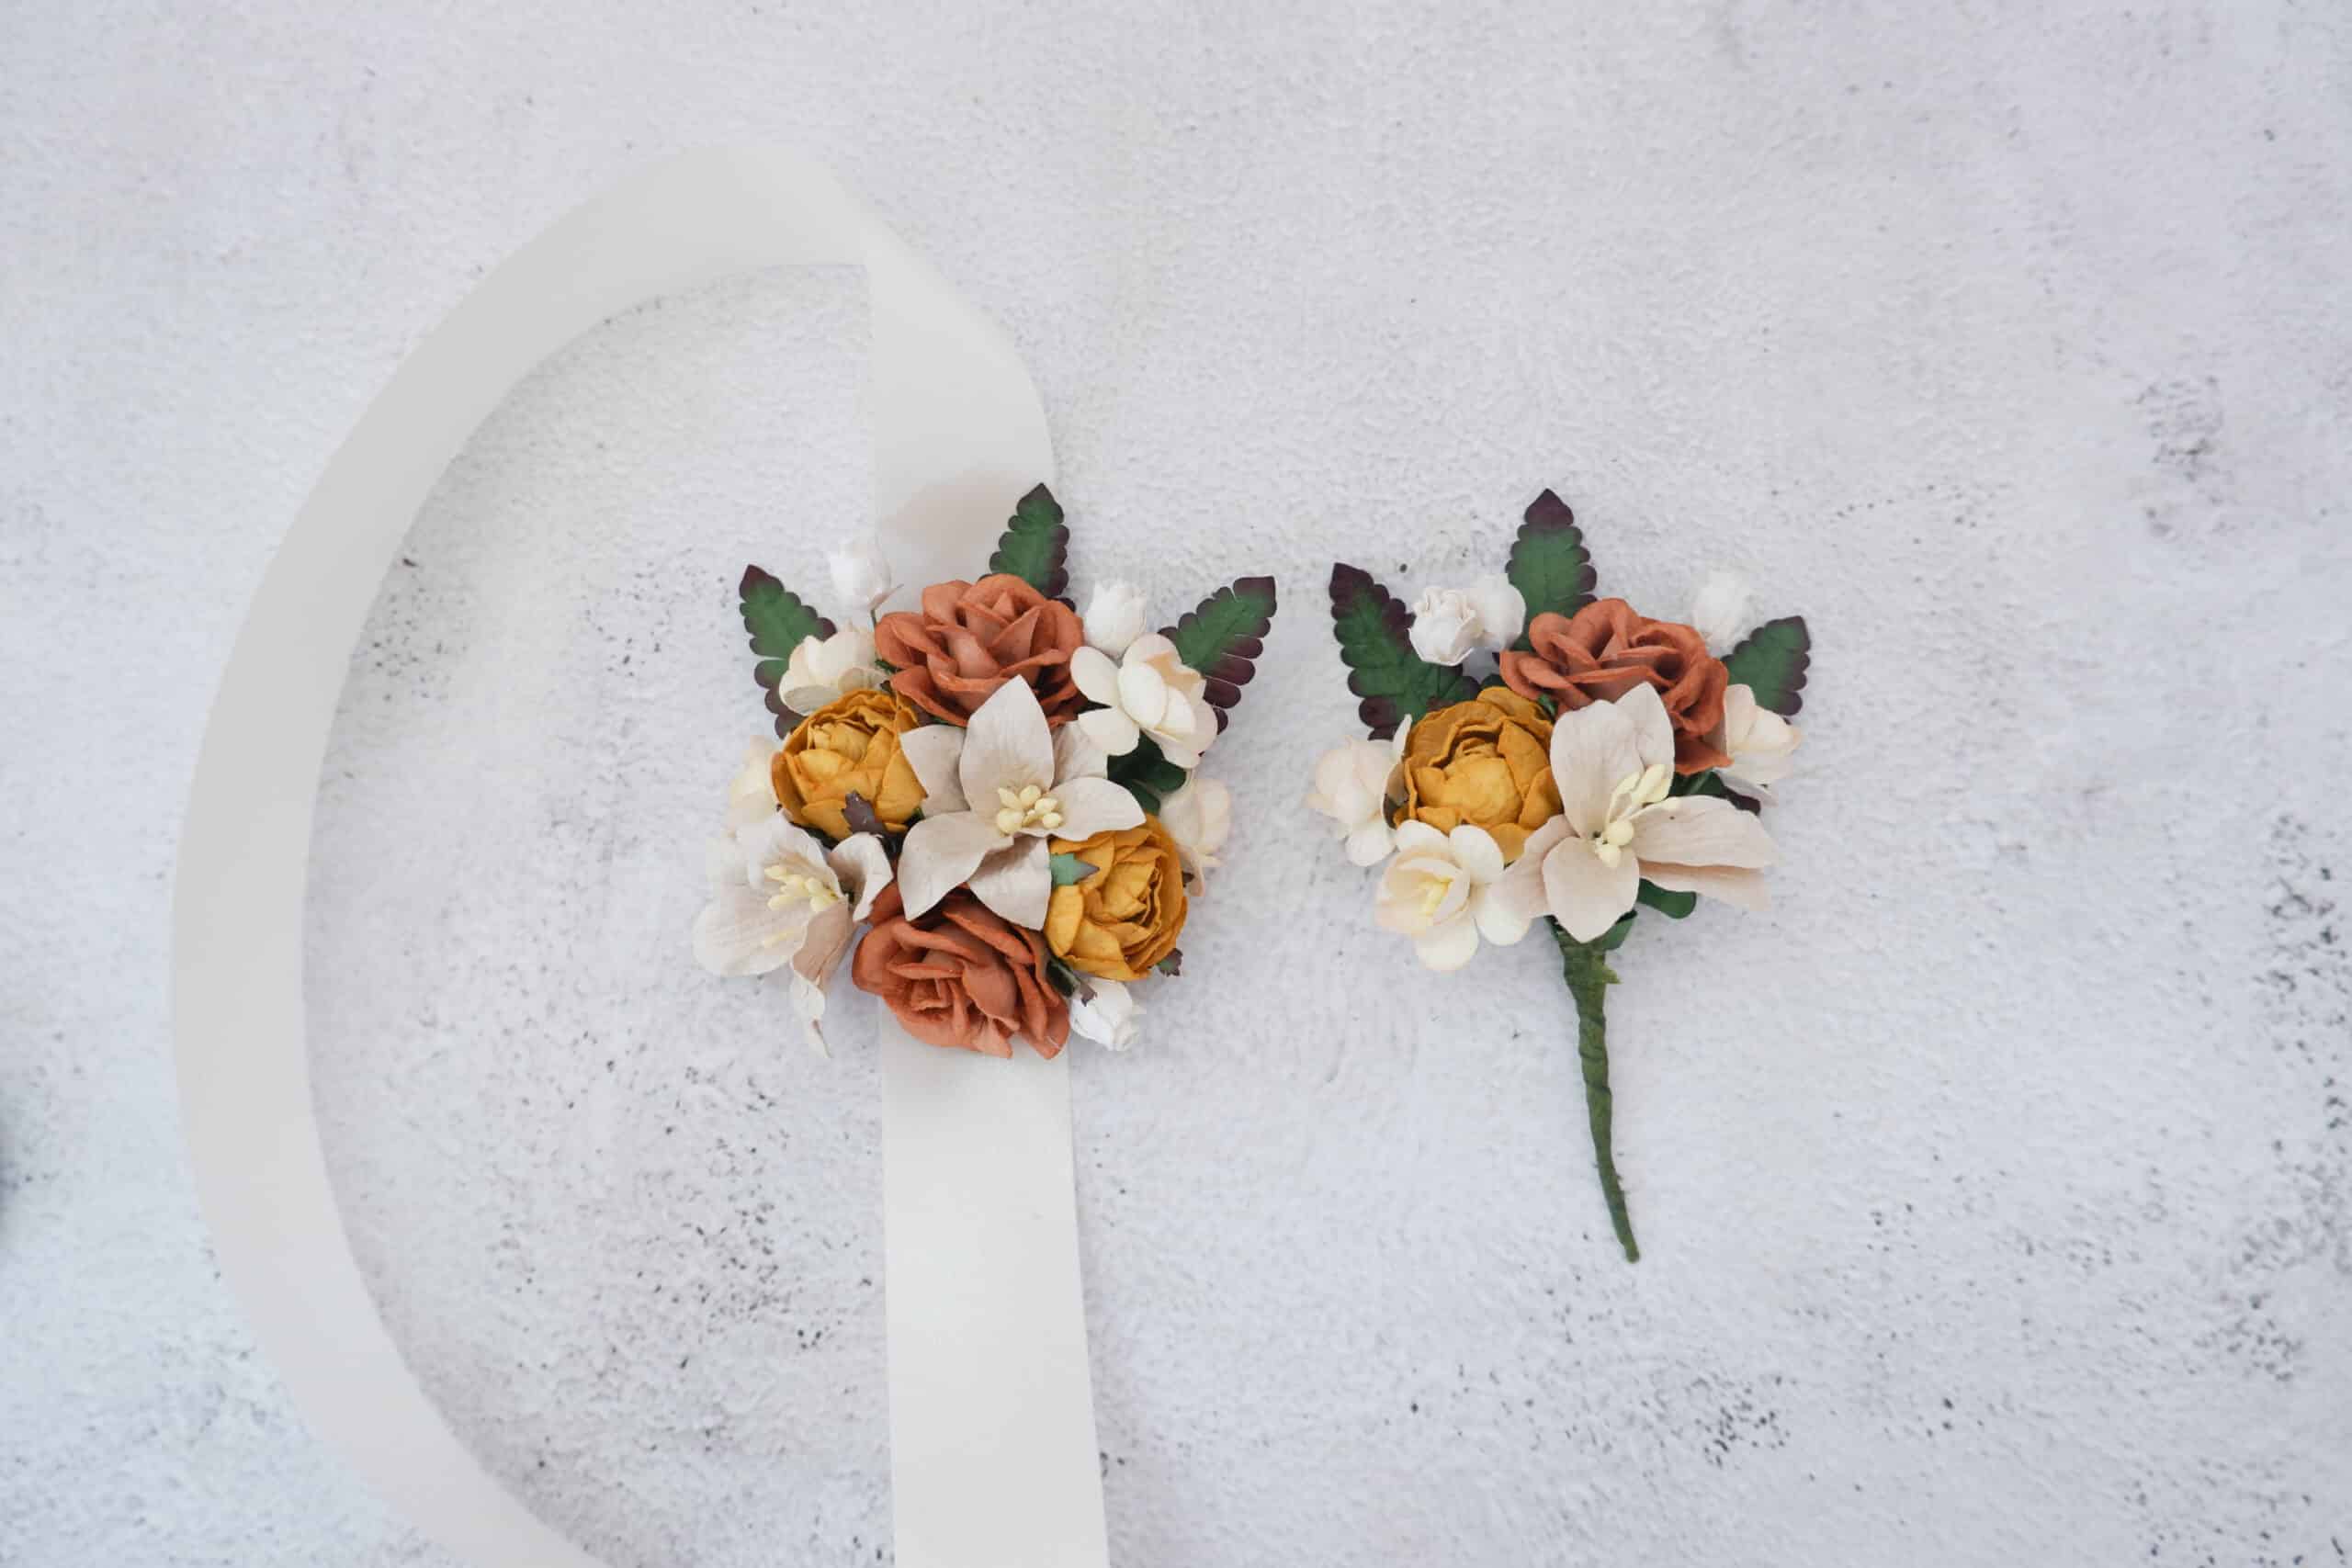 Wedding Flower Wrist Corsage Bracelet – Flowers By Bee